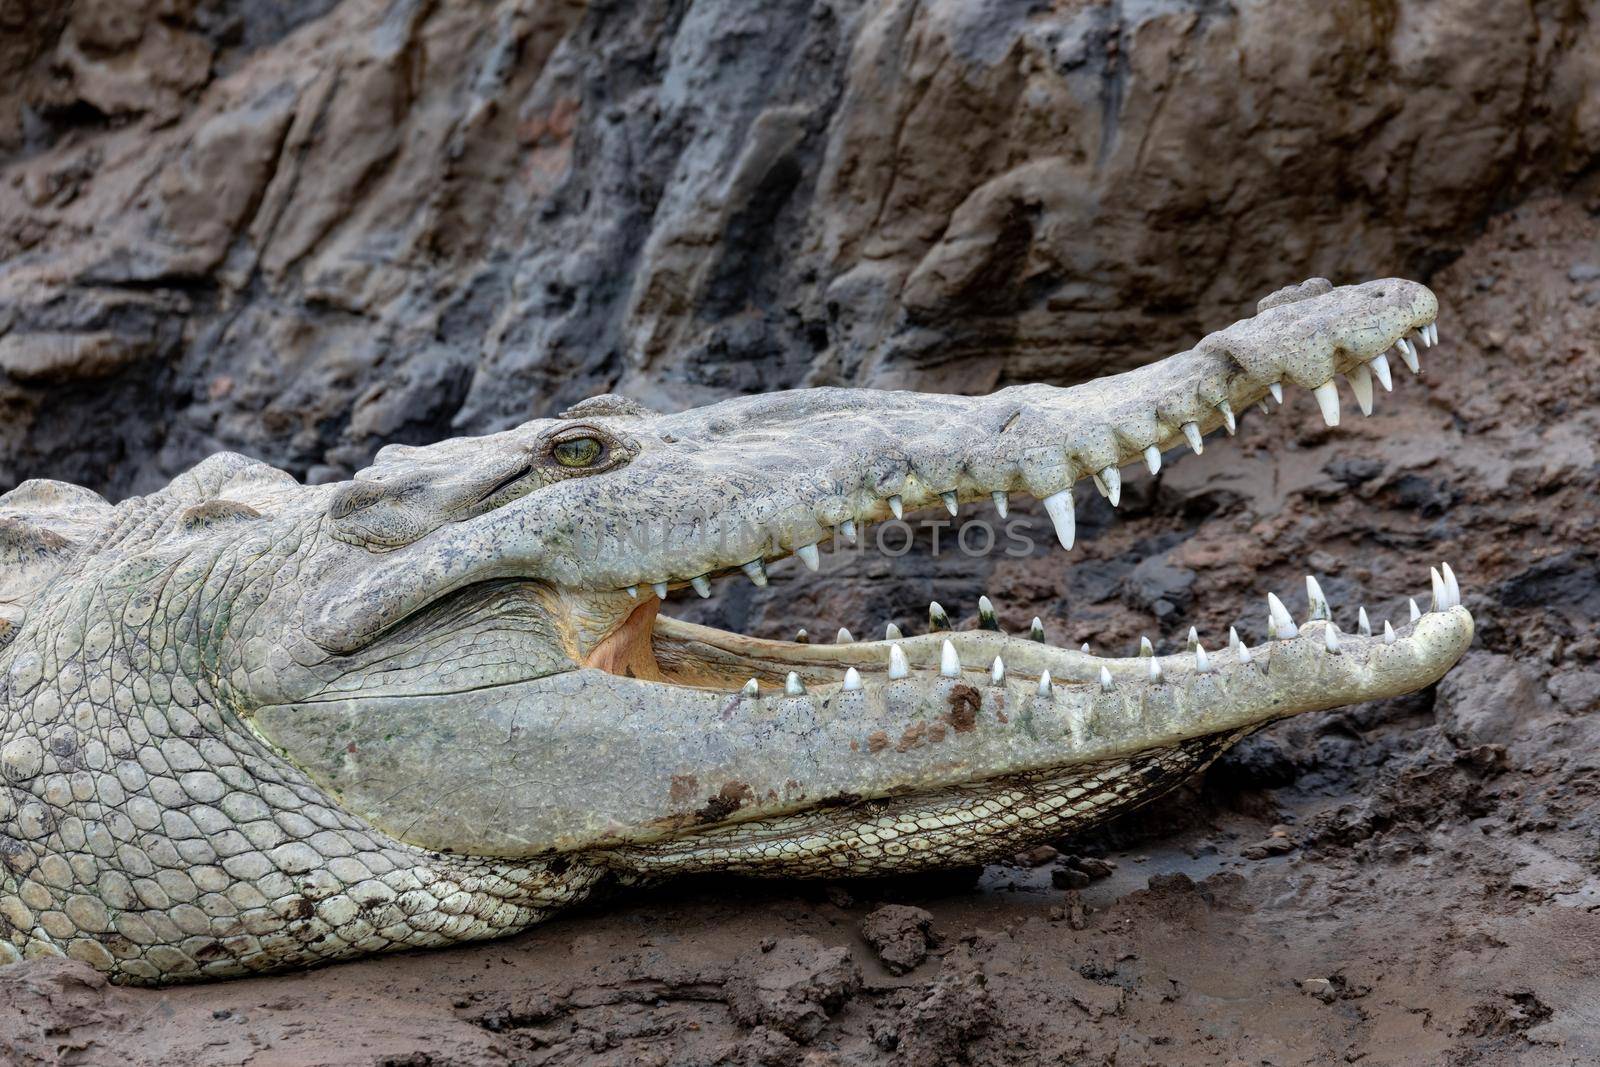 American crocodile, Crocodylus acutus, river Rio Tarcoles, Costa Rica Wildlife by artush